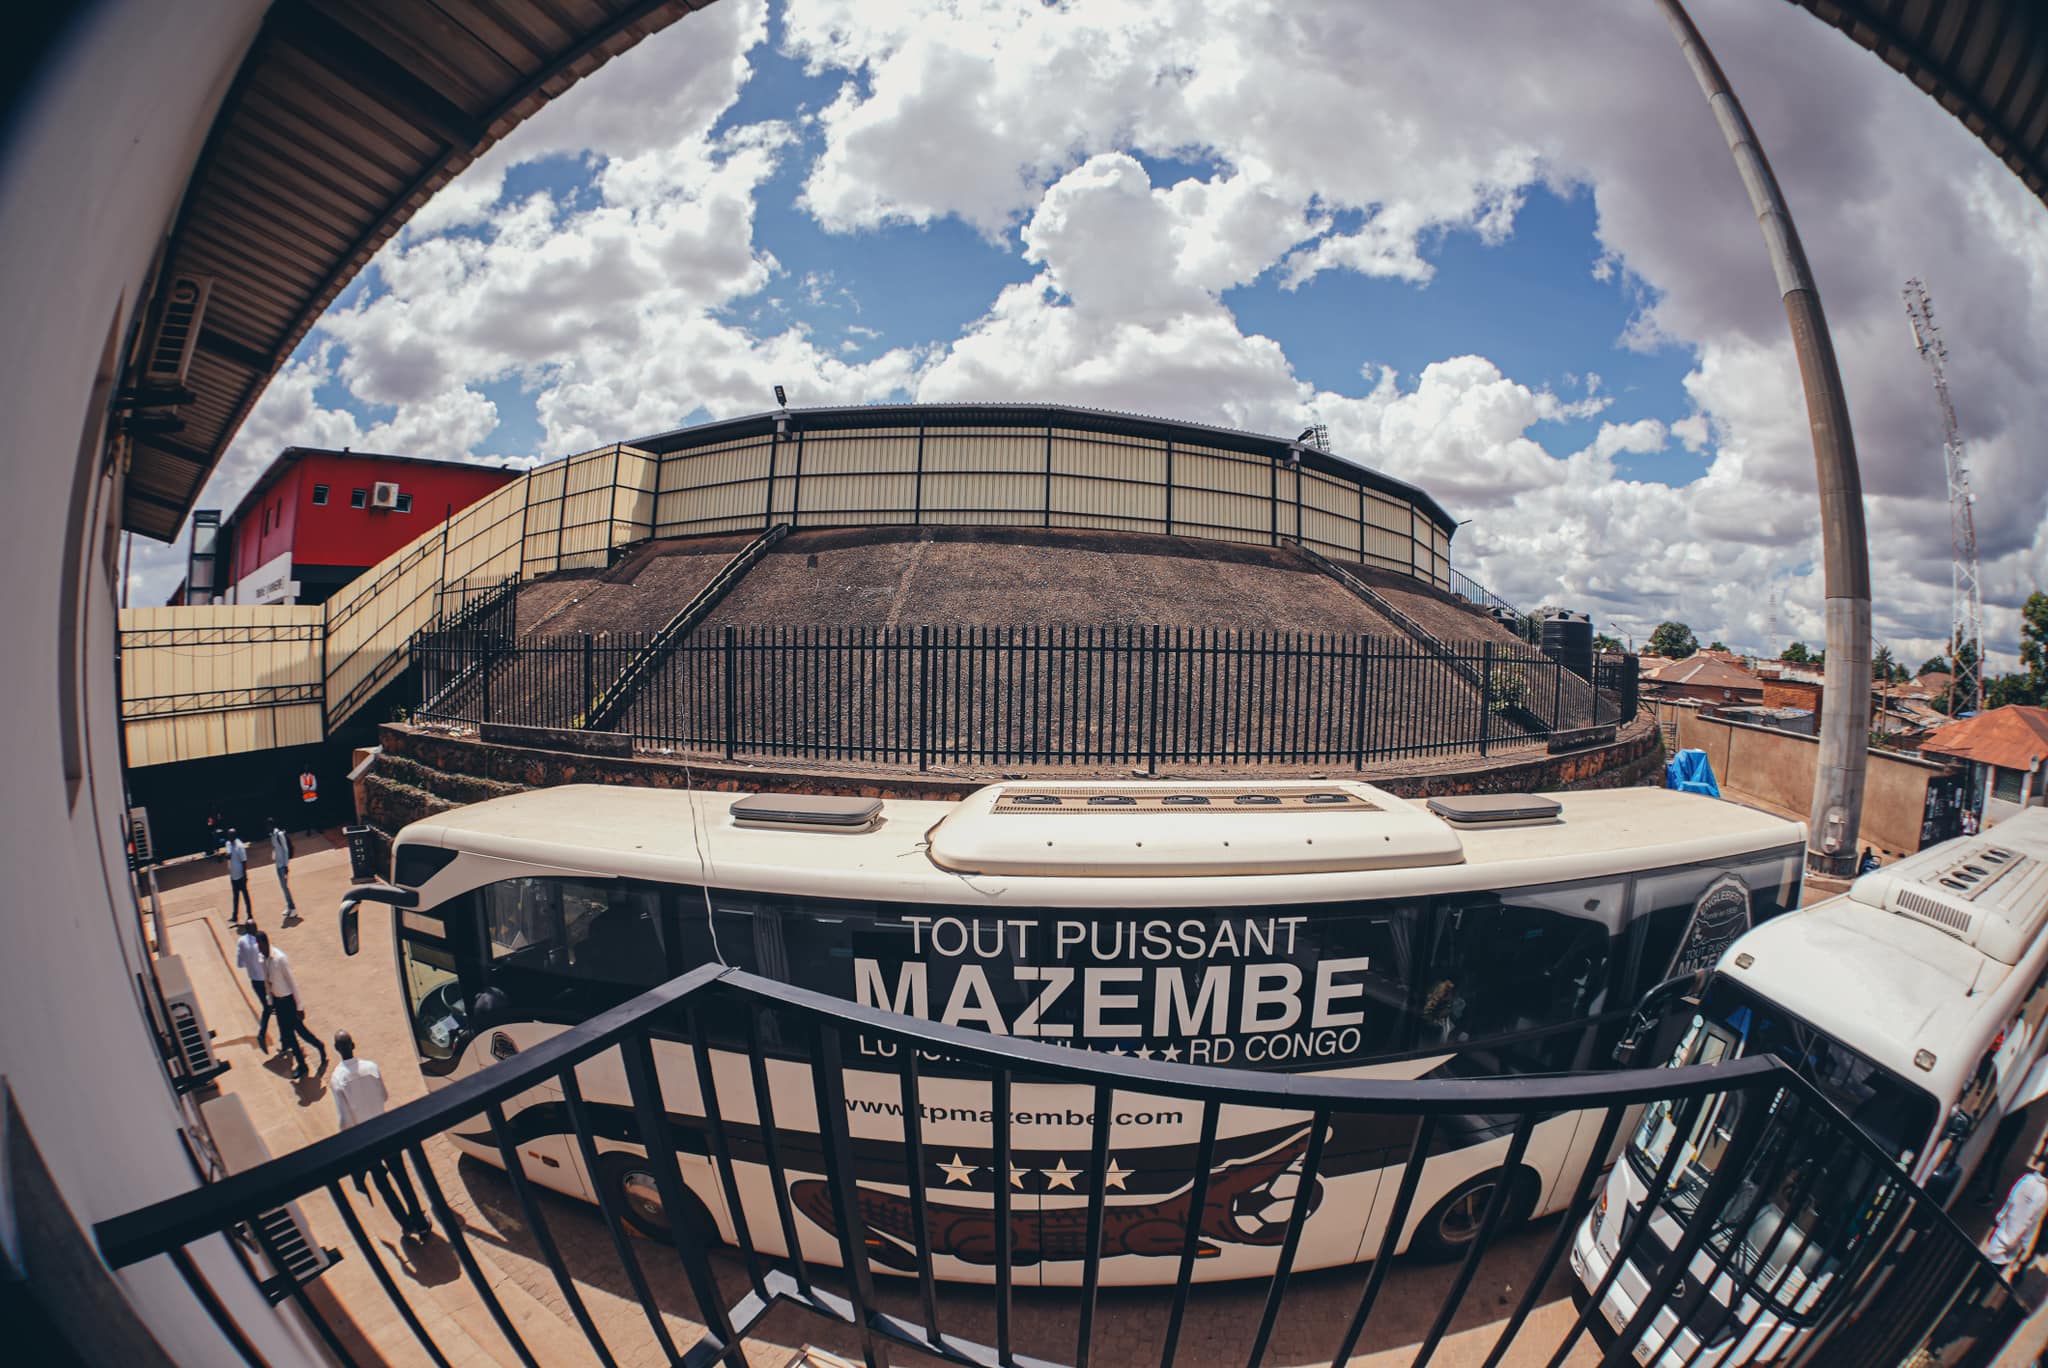 ملعب مازيمبي